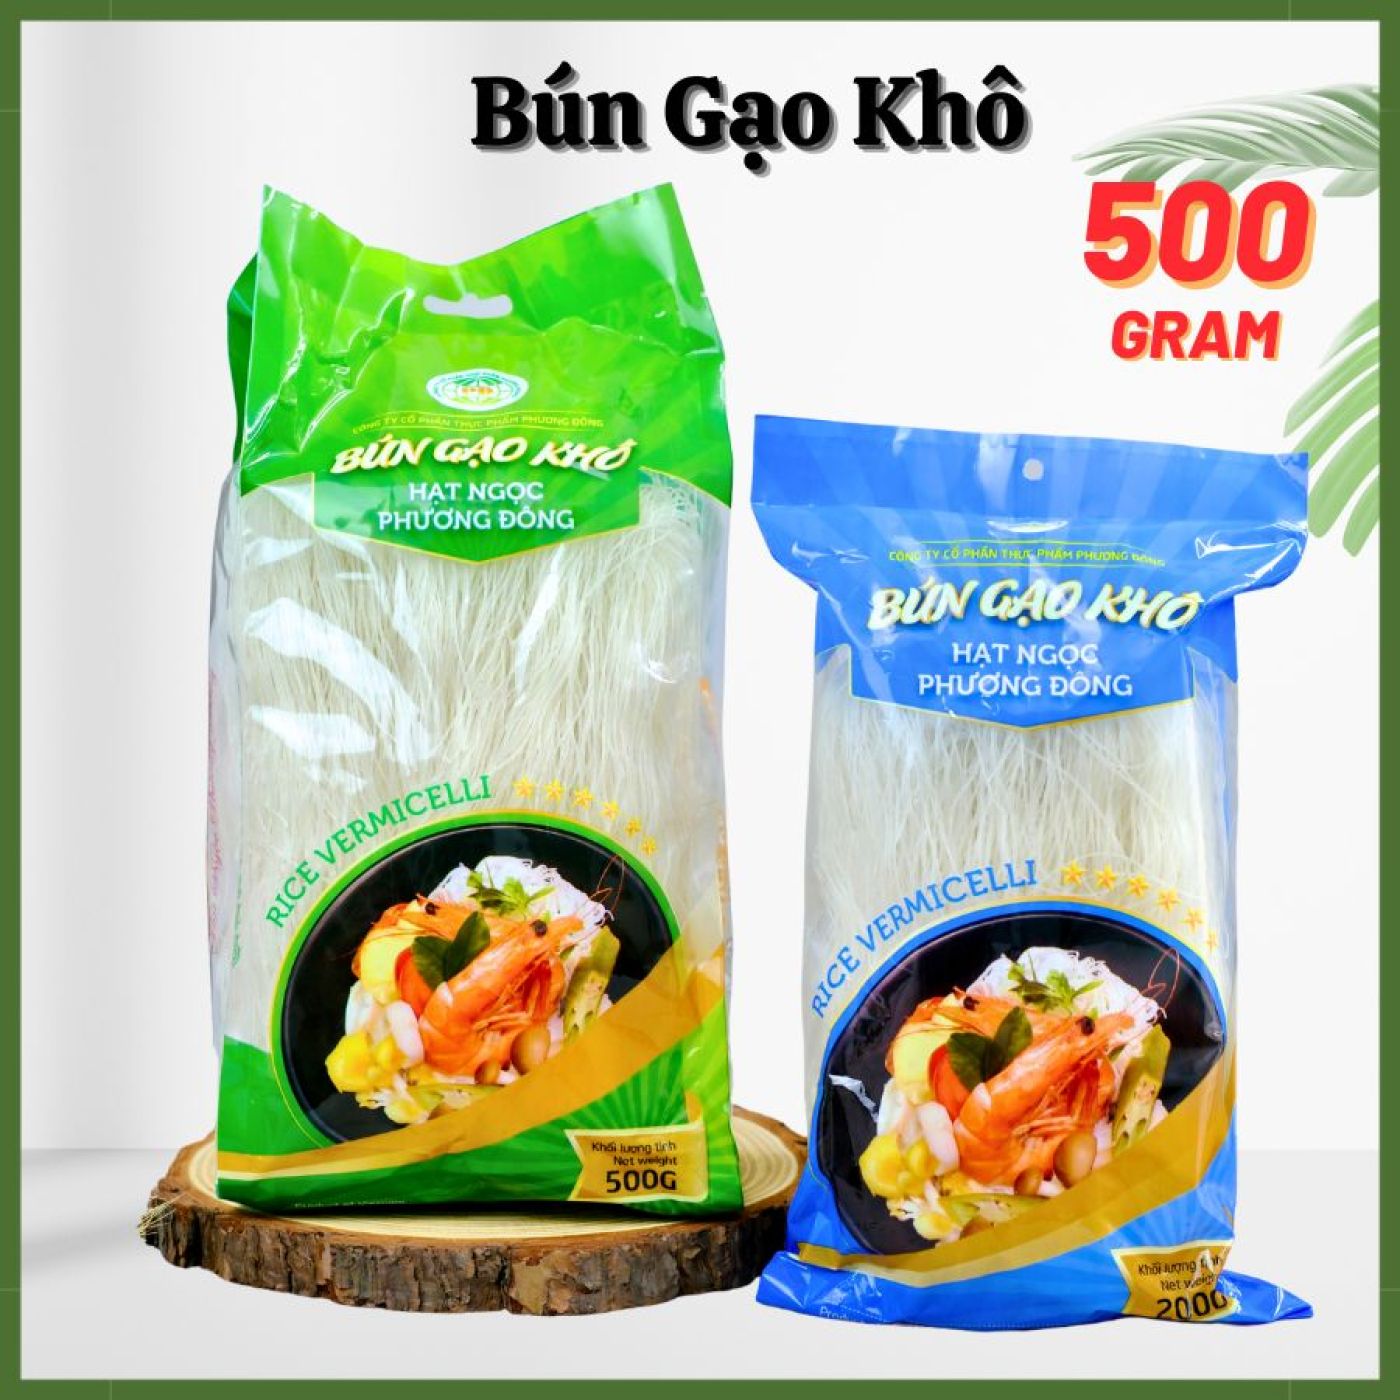 Bún gạo khô nguyên chất - Hạt ngọc Phương Đông ( 500G )